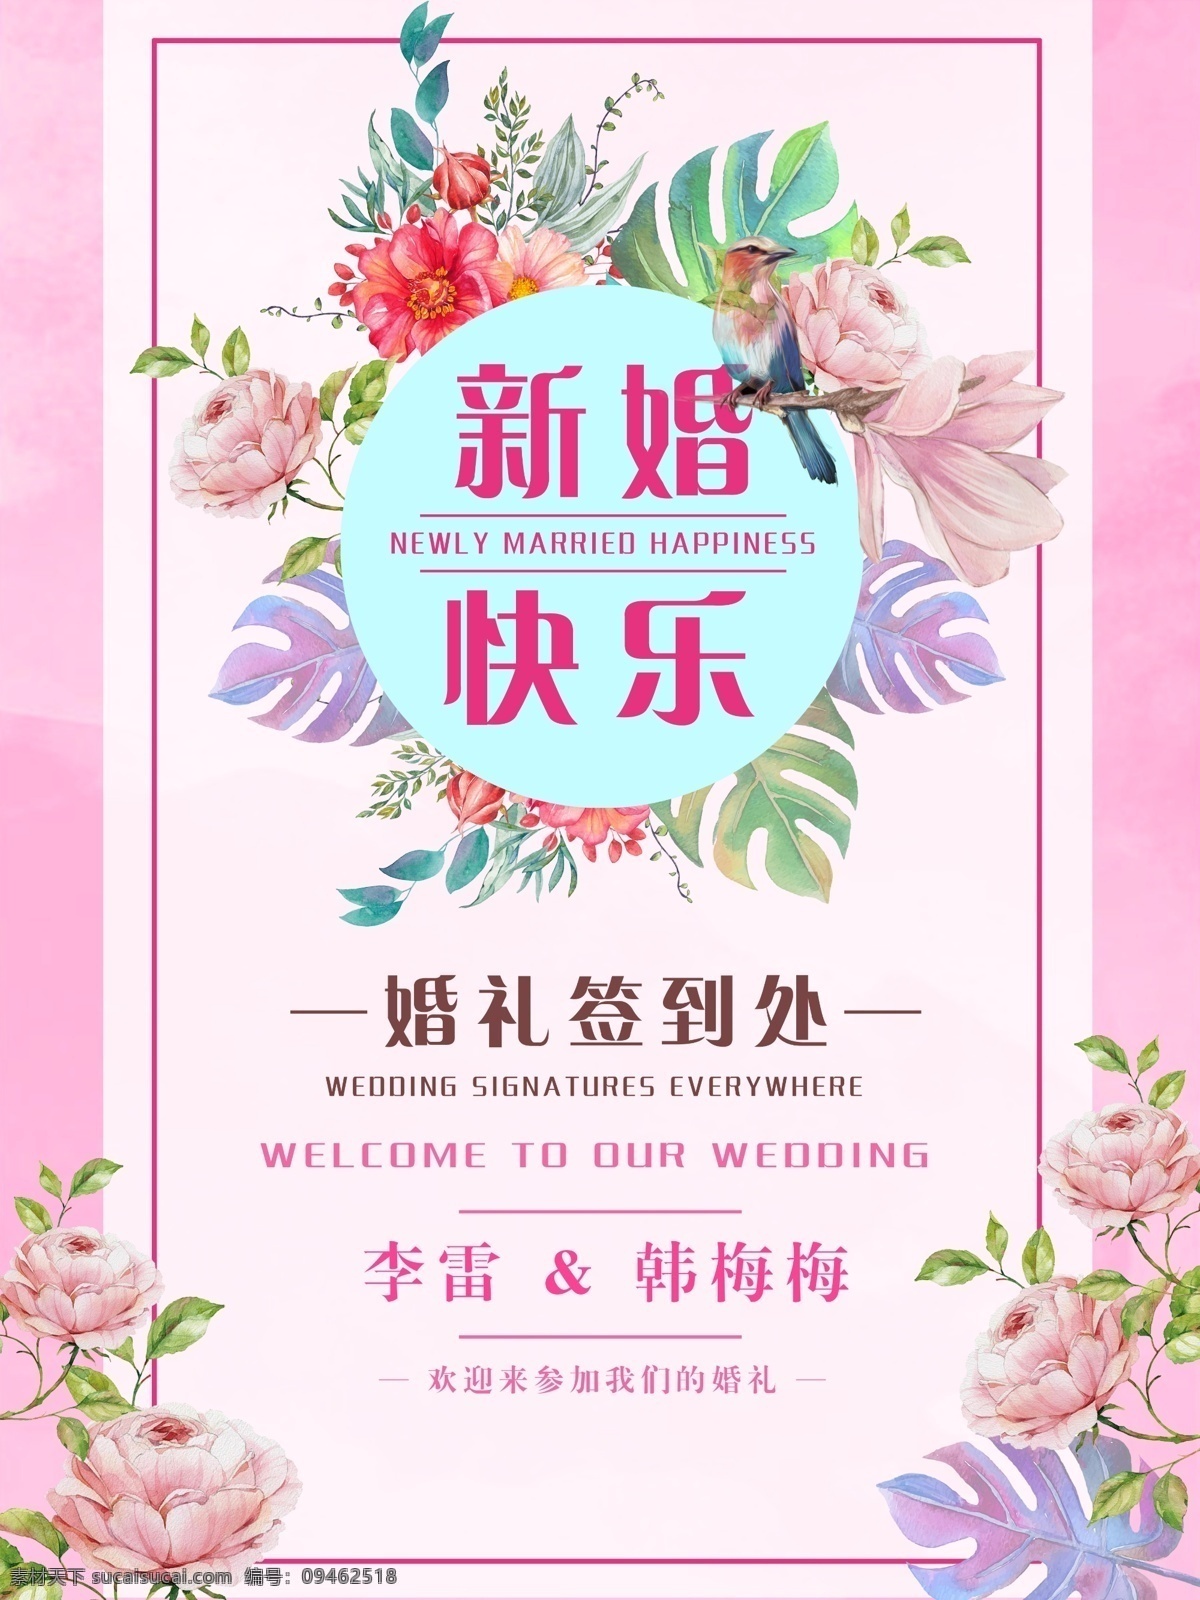 简单 清新 粉红色 婚礼 节日 海报 玫瑰花 新婚快乐